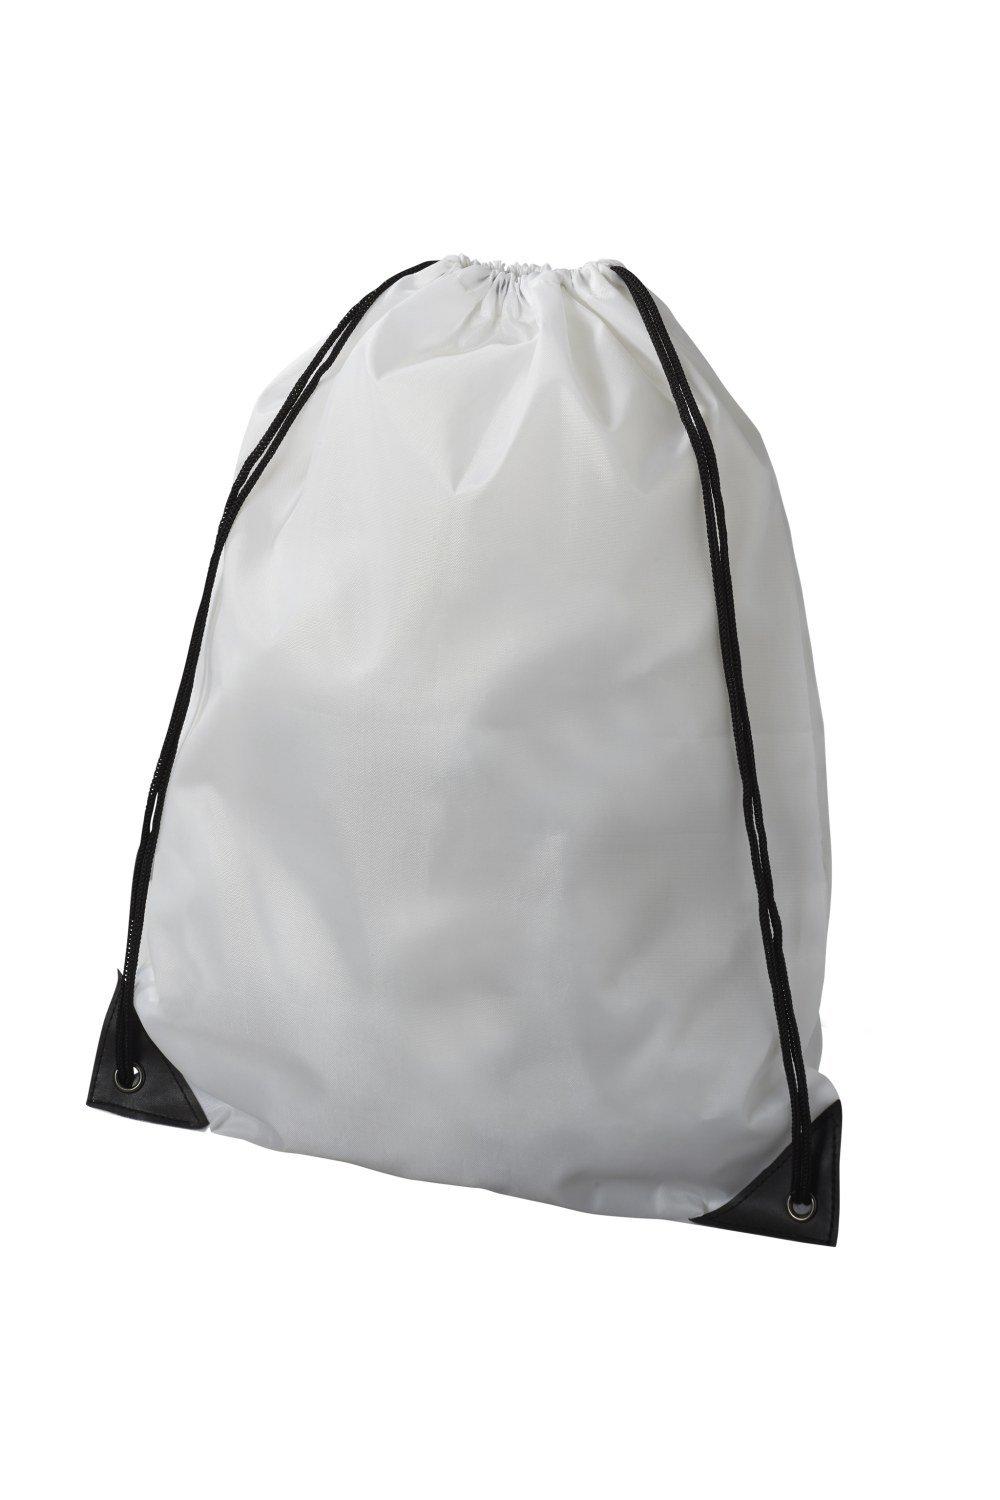 Рюкзак Oriole Премиум Bullet, белый холщовый рюкзак на шнурке модный школьный рюкзак повседневный рюкзак на шнурке школьный рюкзак для девочек подростков